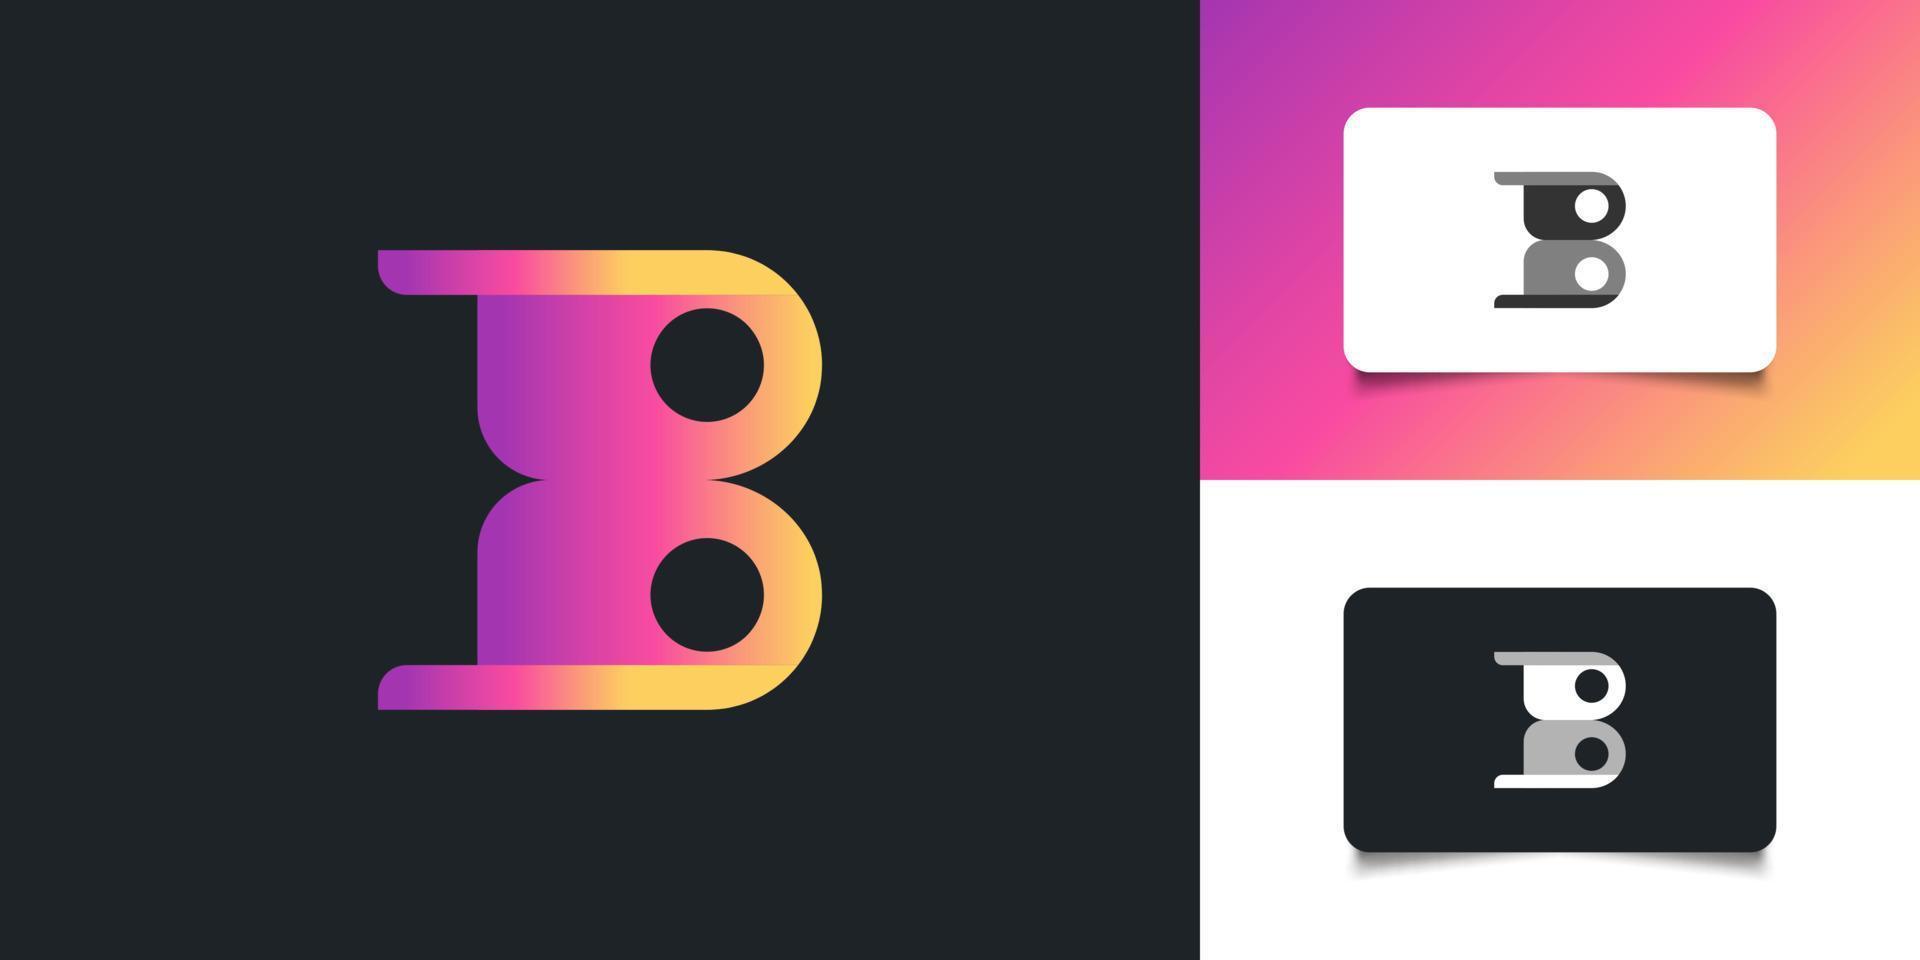 design de logotipo moderno e limpo letra b em gradiente colorido. símbolo gráfico do alfabeto para identidade corporativa vetor